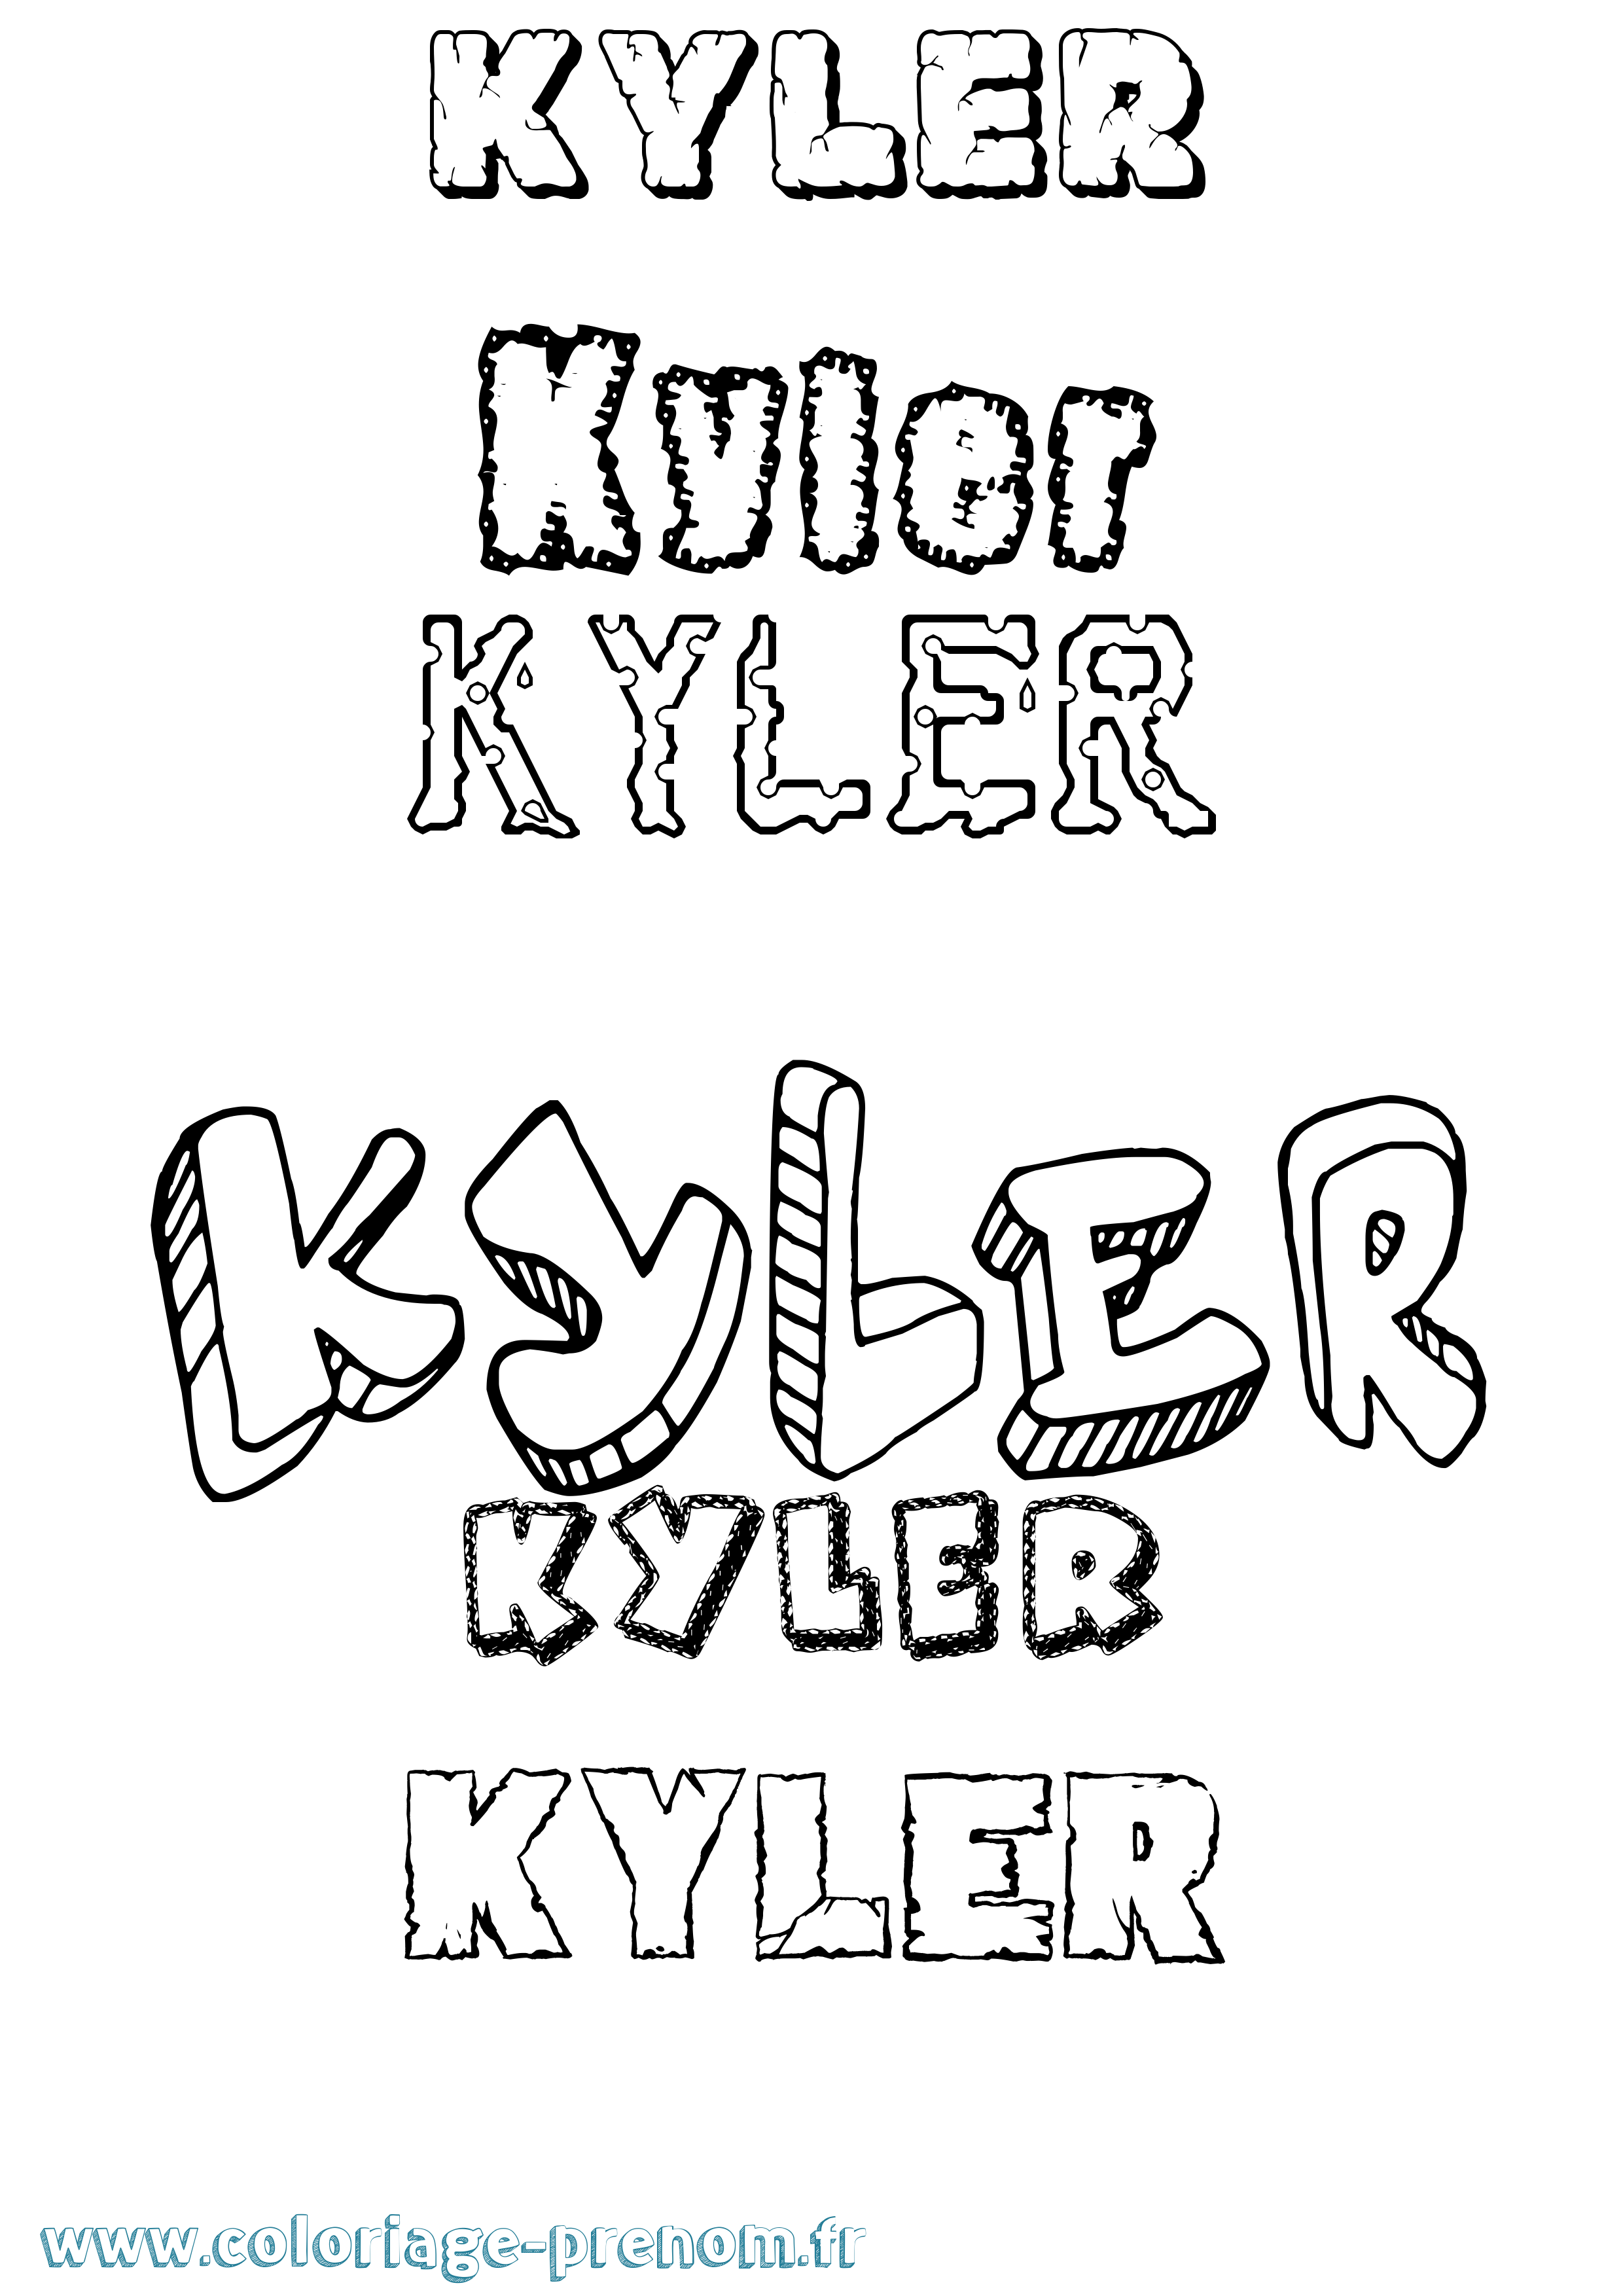 Coloriage prénom Kyler Destructuré